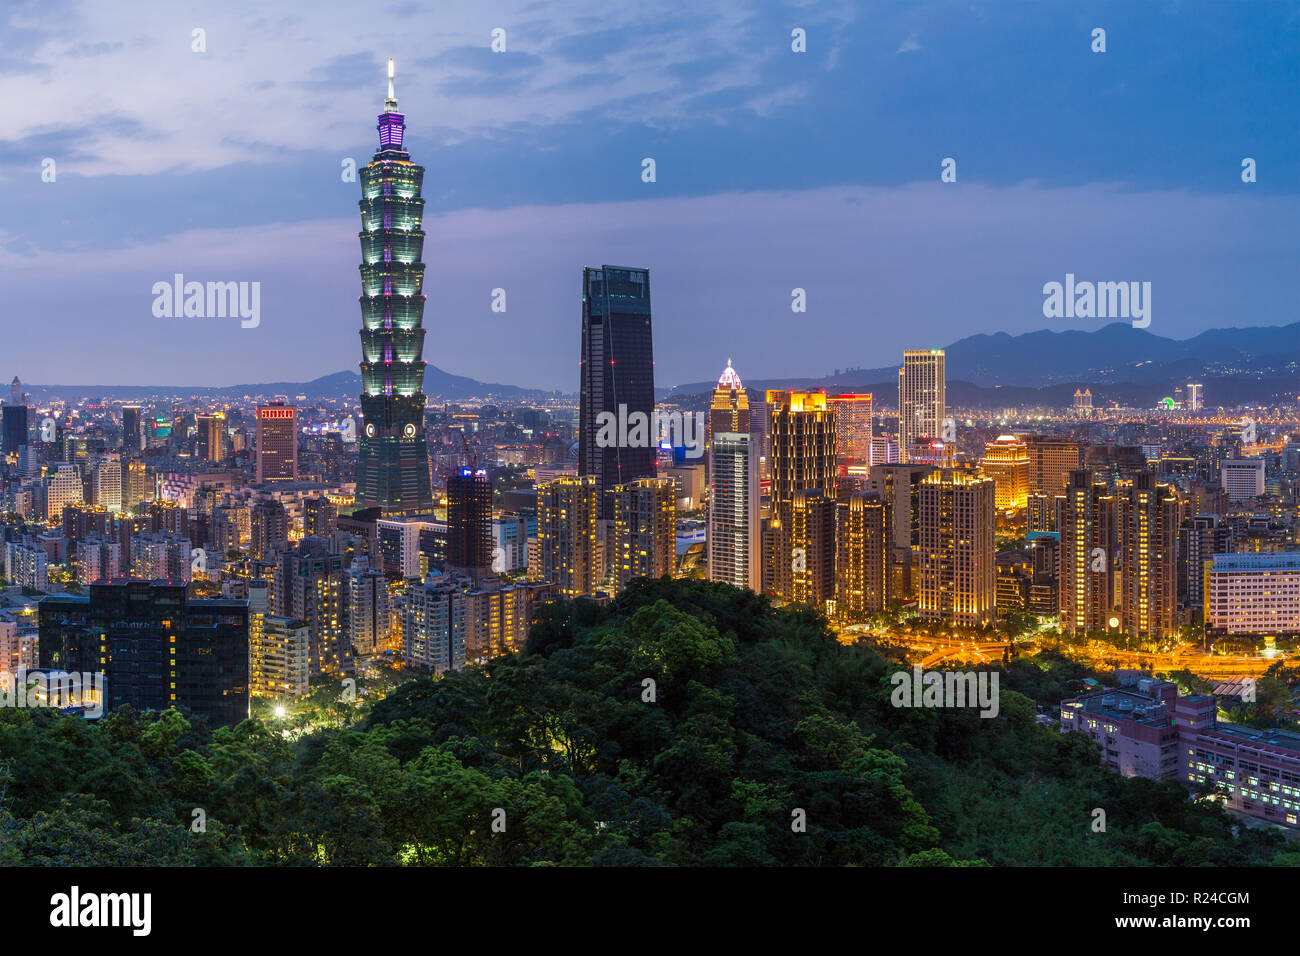 El horizonte de la ciudad y el edificio Taipei 101 en el distrito de Xinyi, Taipei, Taiwán, Asia Foto de stock